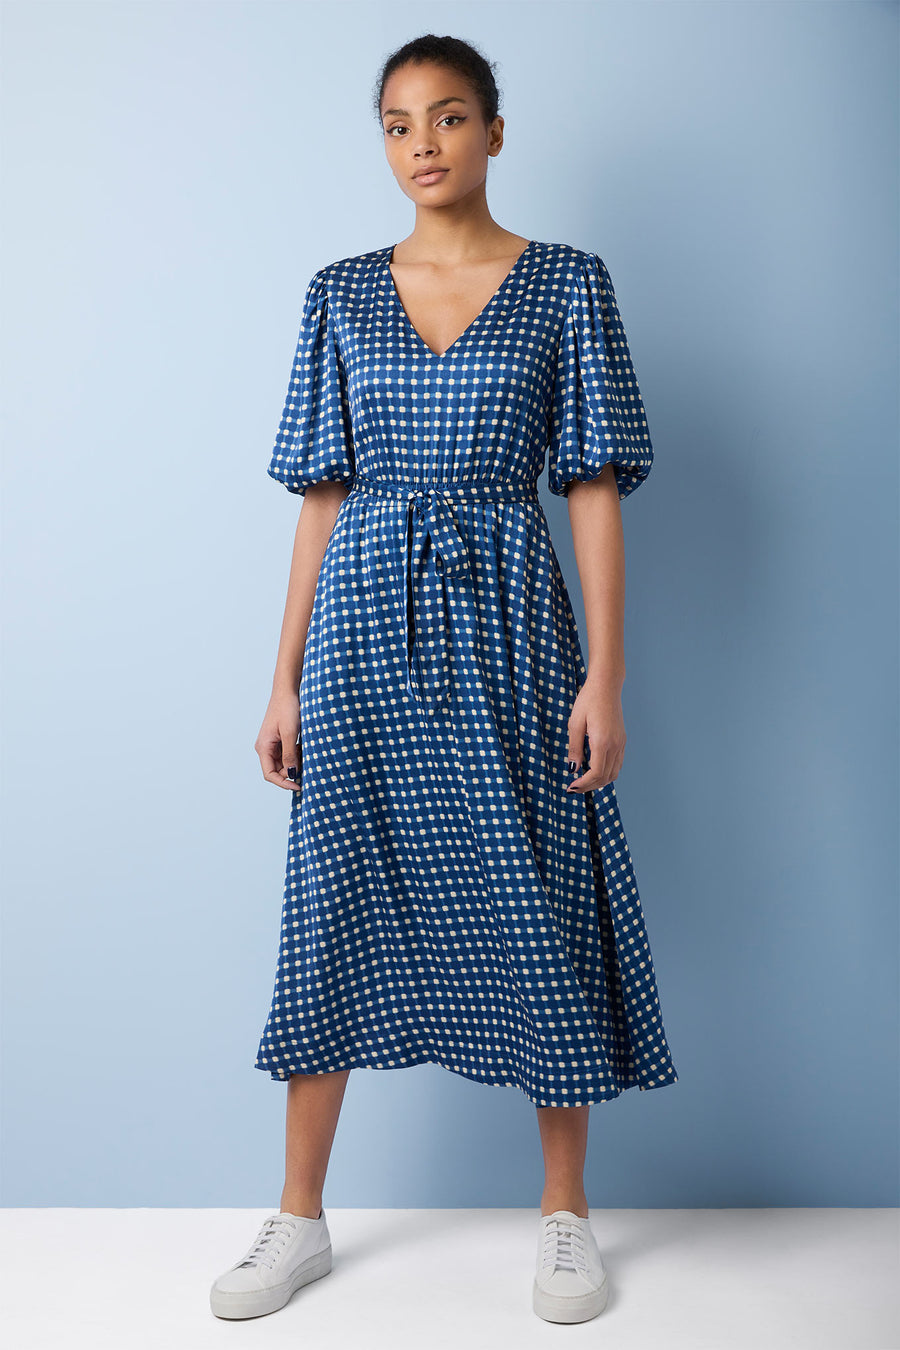 Brittni Blurred Gingham Dress - Blue Multi - Longer Length